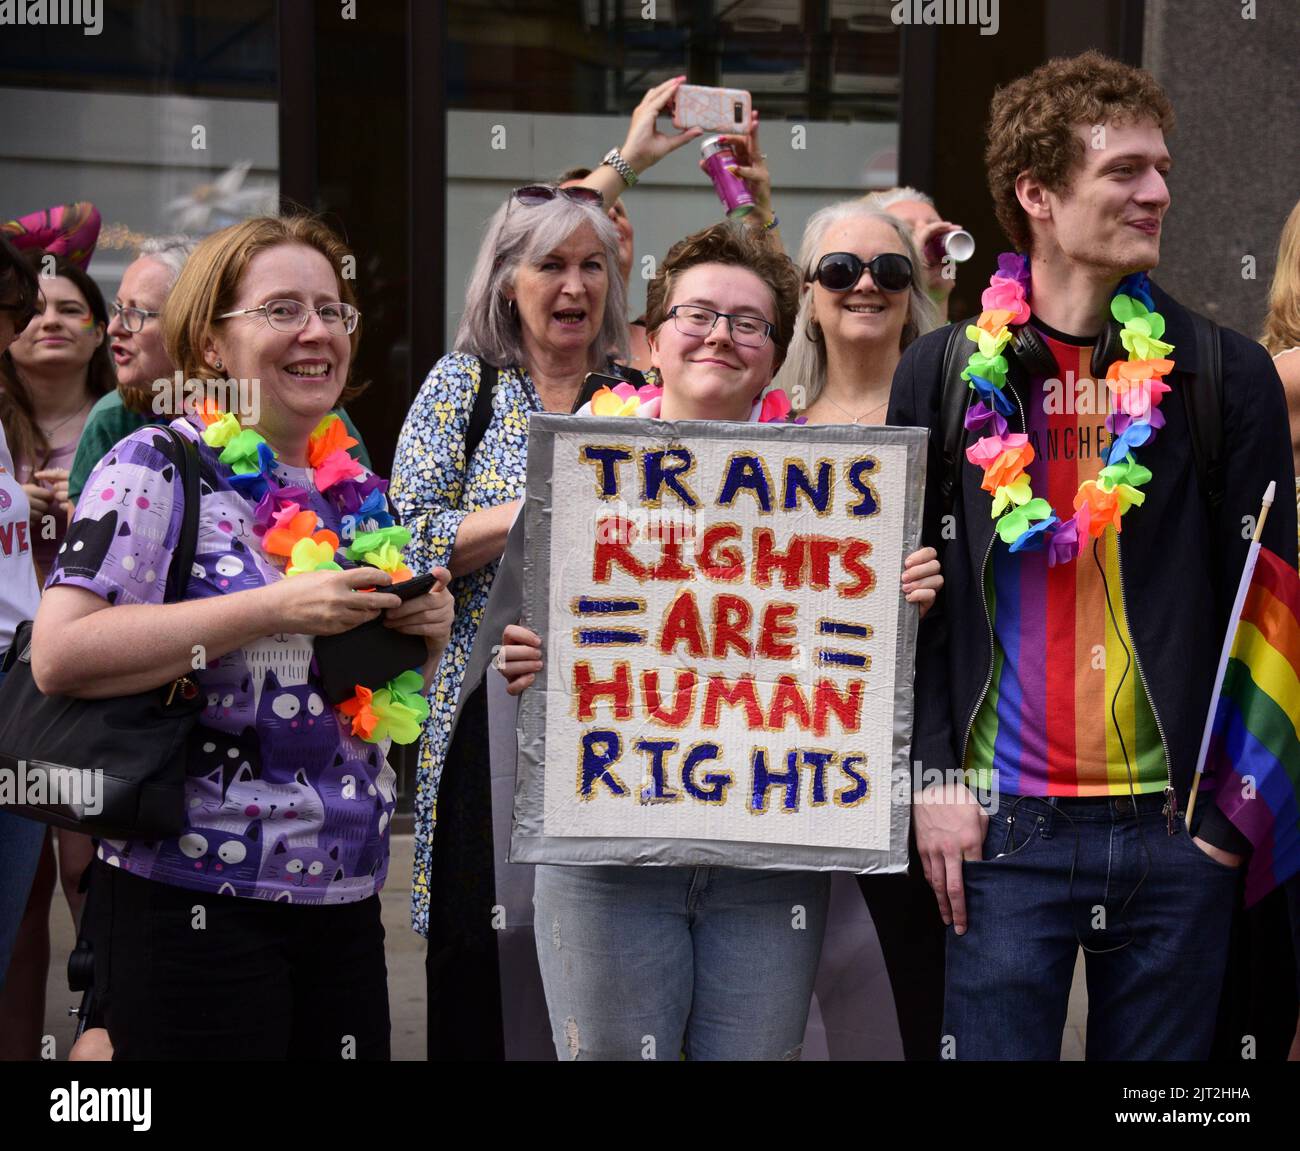 Manchester, Reino Unido. 27th de agosto de 2022. Una persona lleva un cartel: «Los derechos trans son derechos humanos». Los participantes participan en el desfile LGBTQ+ Pride Parade, en el centro de Manchester, Reino Unido, mientras LGBTQ+ Pride continúa durante el fin de semana festivo del 26th al 29th de agosto. Los organizadores dicen: 'Manchester Pride es una de las principales organizaciones benéficas LGBTQ+ del Reino Unido. Nuestra visión es un mundo donde las personas LGBTQ+ son libres de vivir y amar sin prejuicio. Somos parte de un movimiento mundial del Orgullo que celebra la igualdad LGBTQ+ y desafía la discriminación.' Crédito: Terry Waller/Alamy Live News Foto de stock